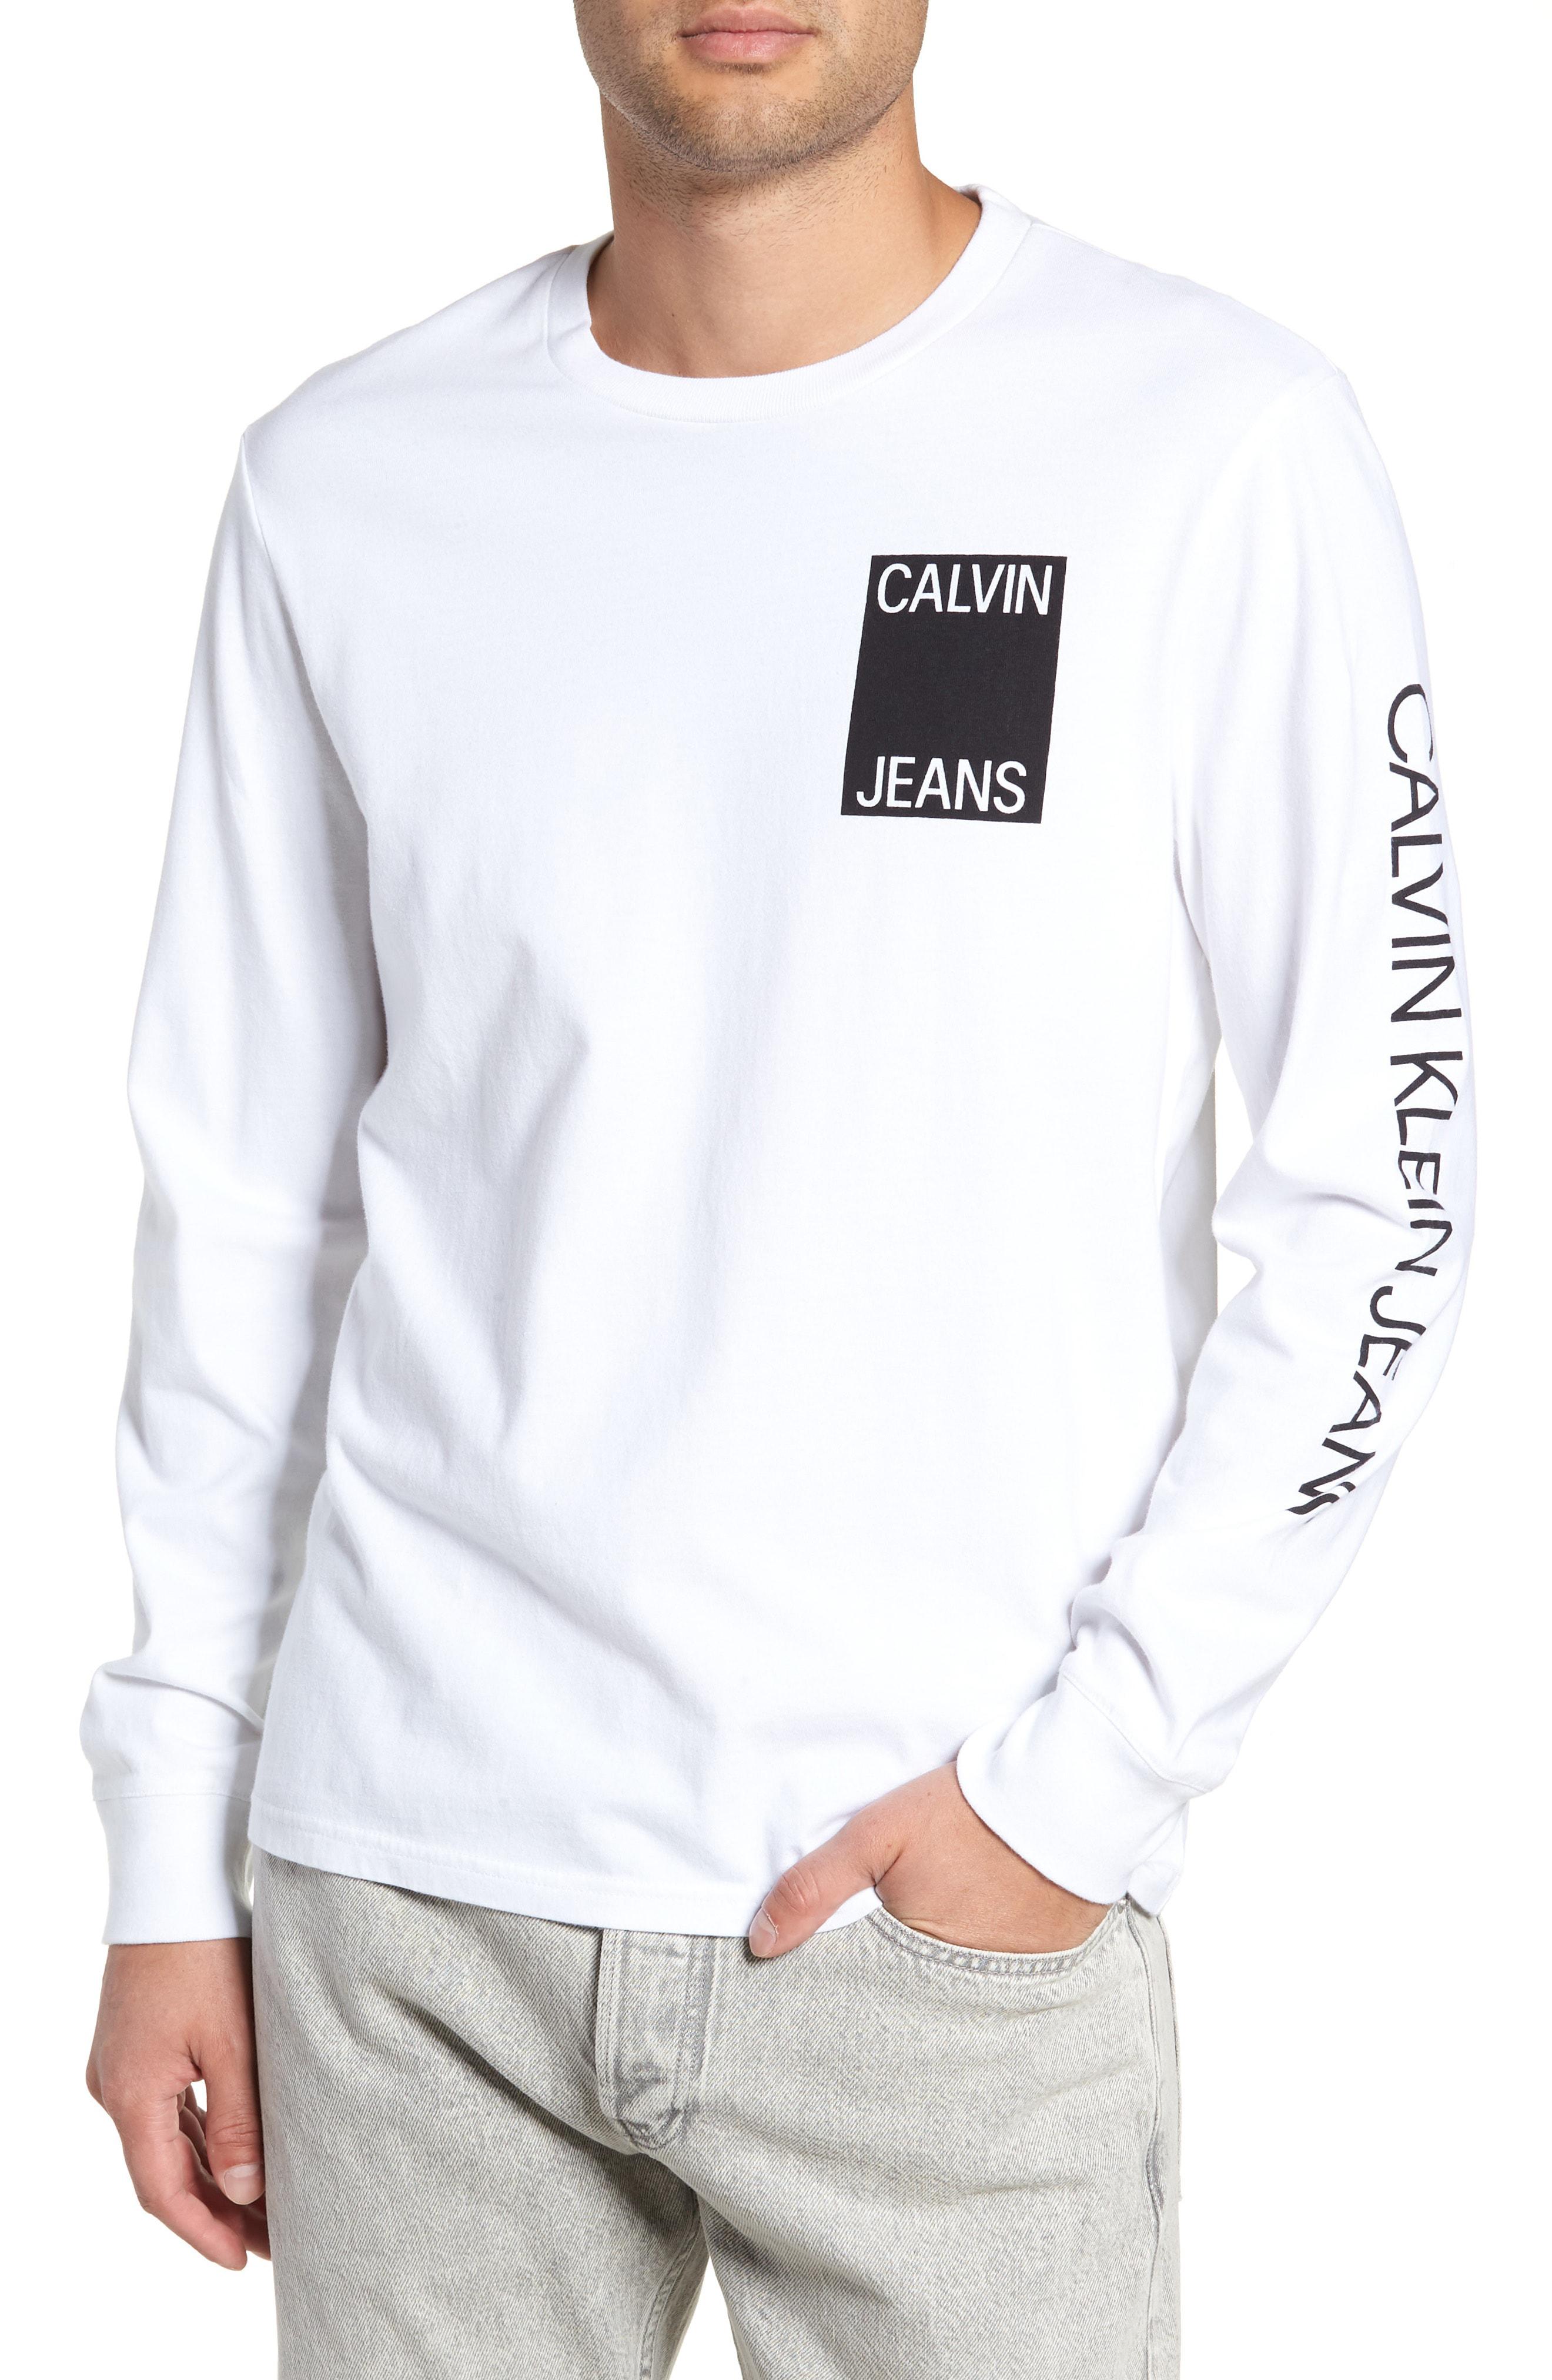 Calvin Klein Stacked Logo Long Sleeve T-shirt in White for Men - Lyst